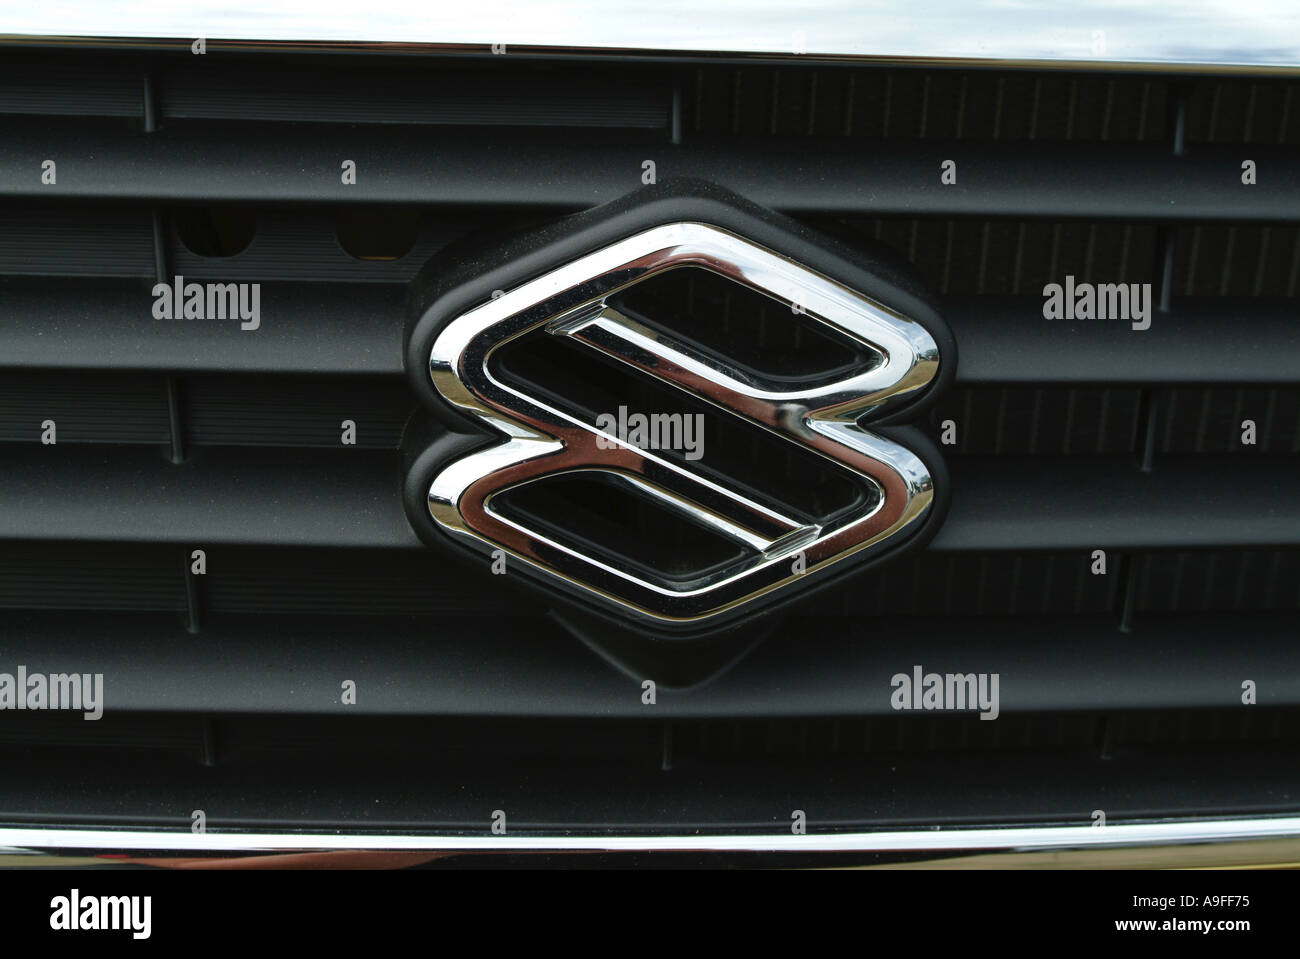 Constructeur automobile Suzuki japon manufacturel logo badge Bonnet chrome  Photo Stock - Alamy